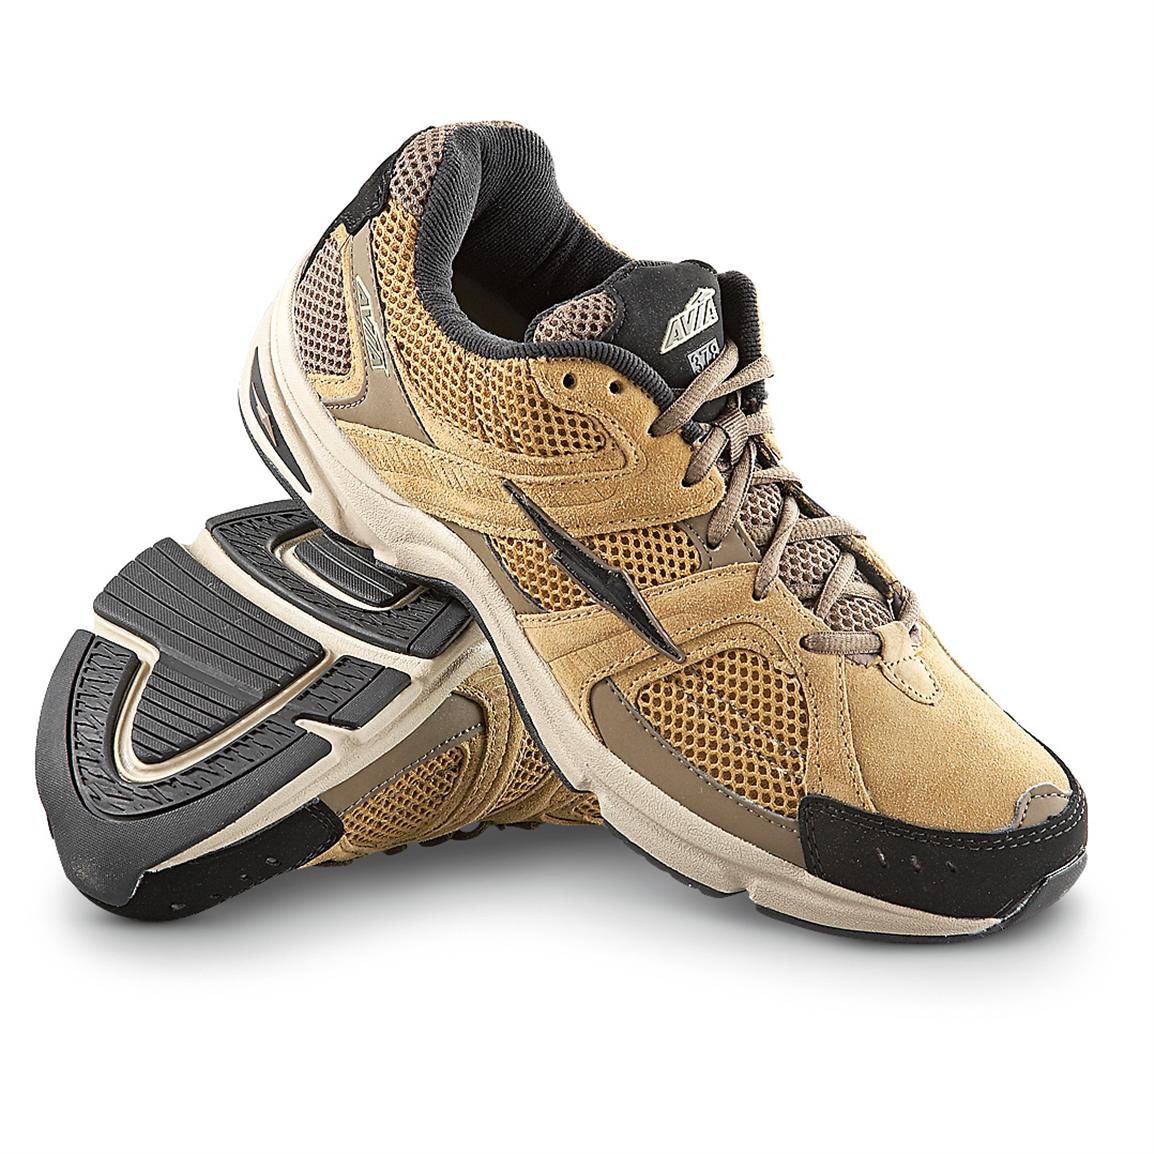 Men's AVIA® 378 Walking Shoes, Tan / Black - 220205, Running Shoes